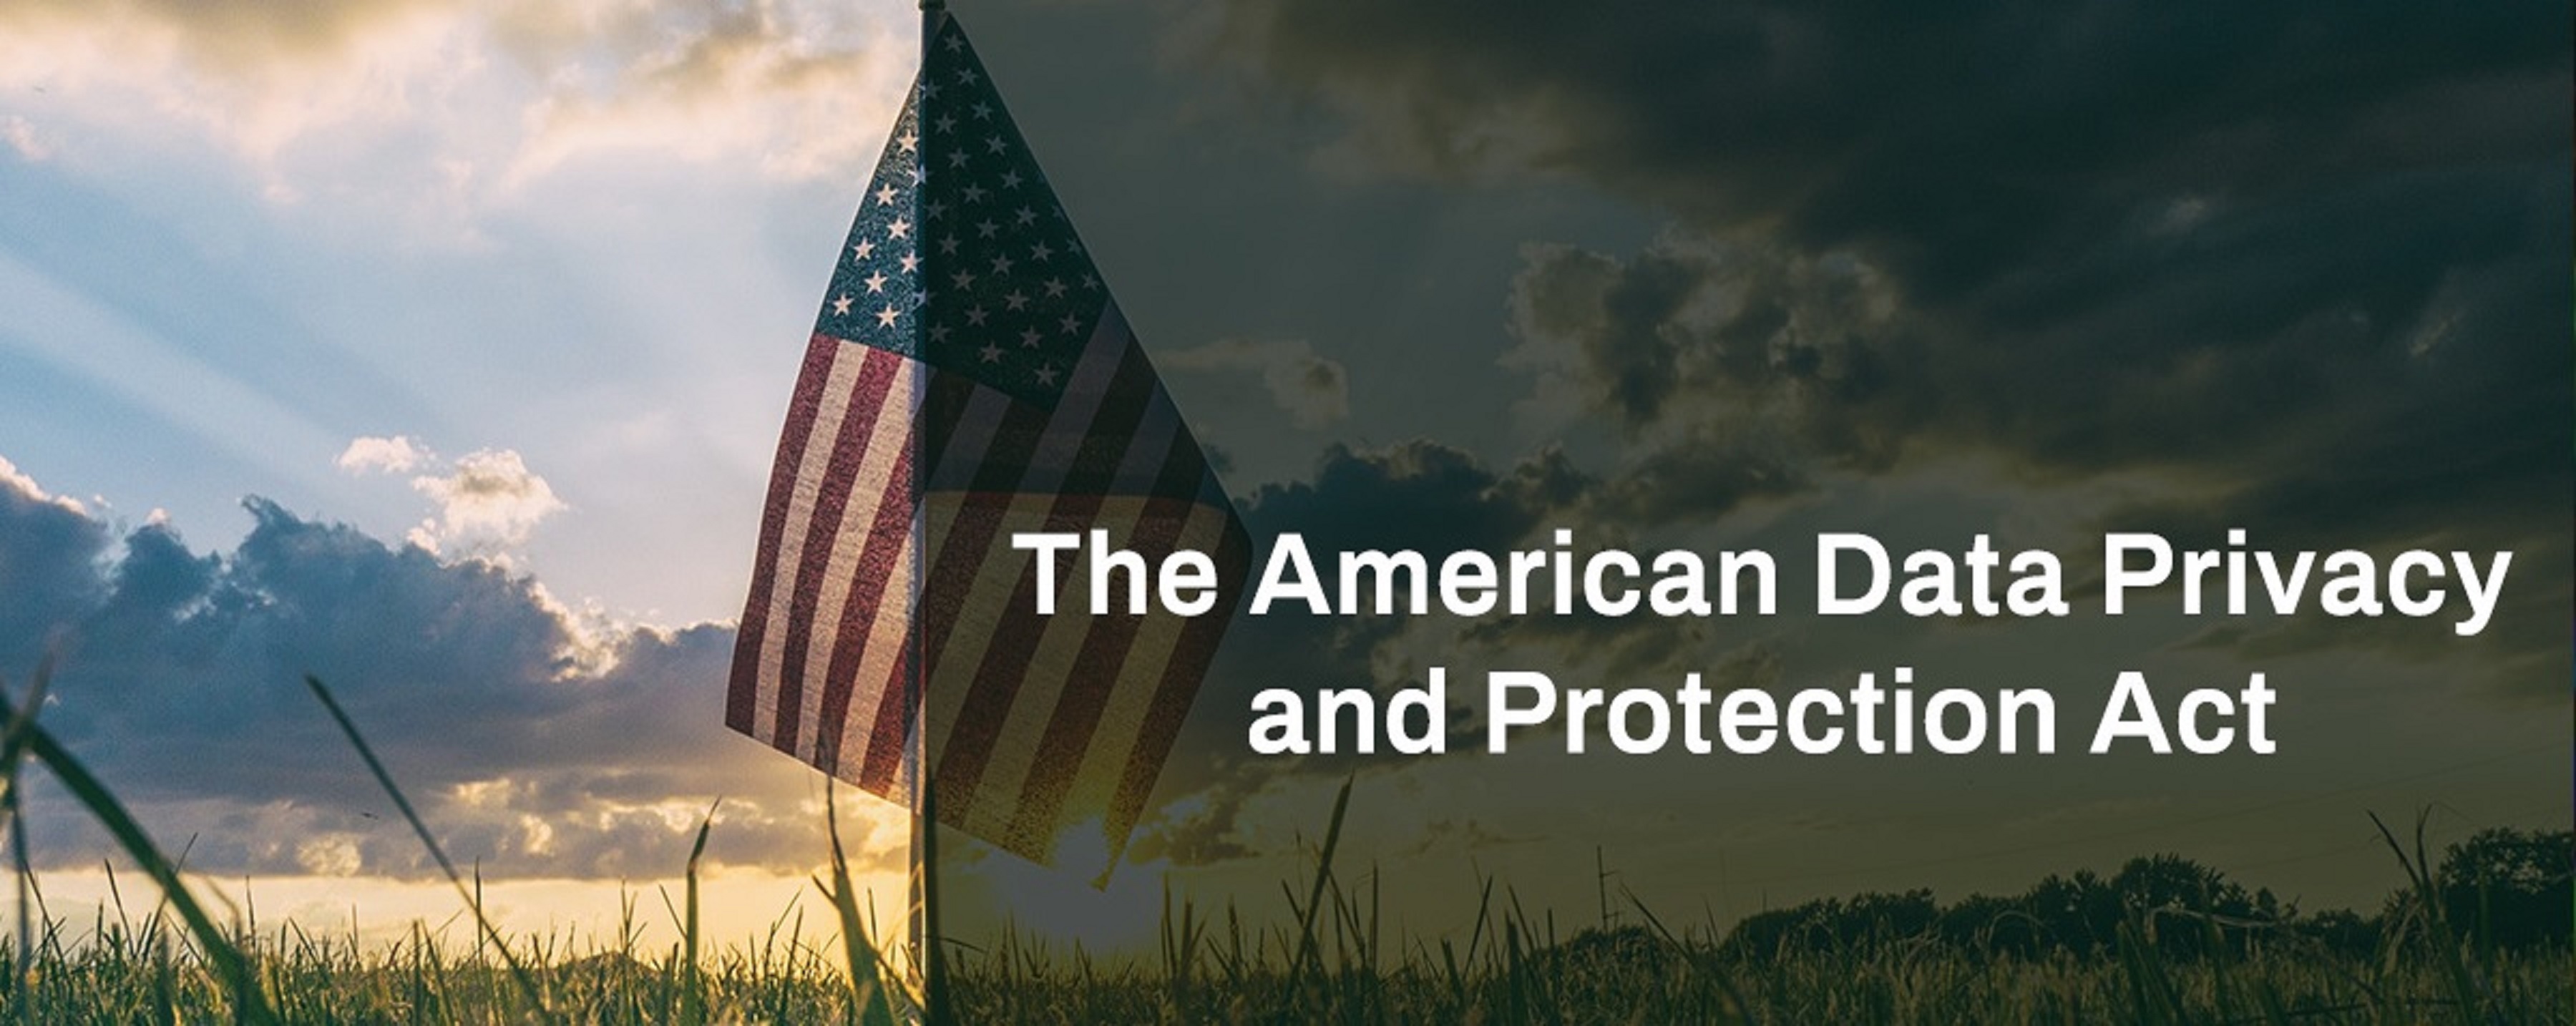 Artículo académico sobre la American Data Privacy and Protection Act